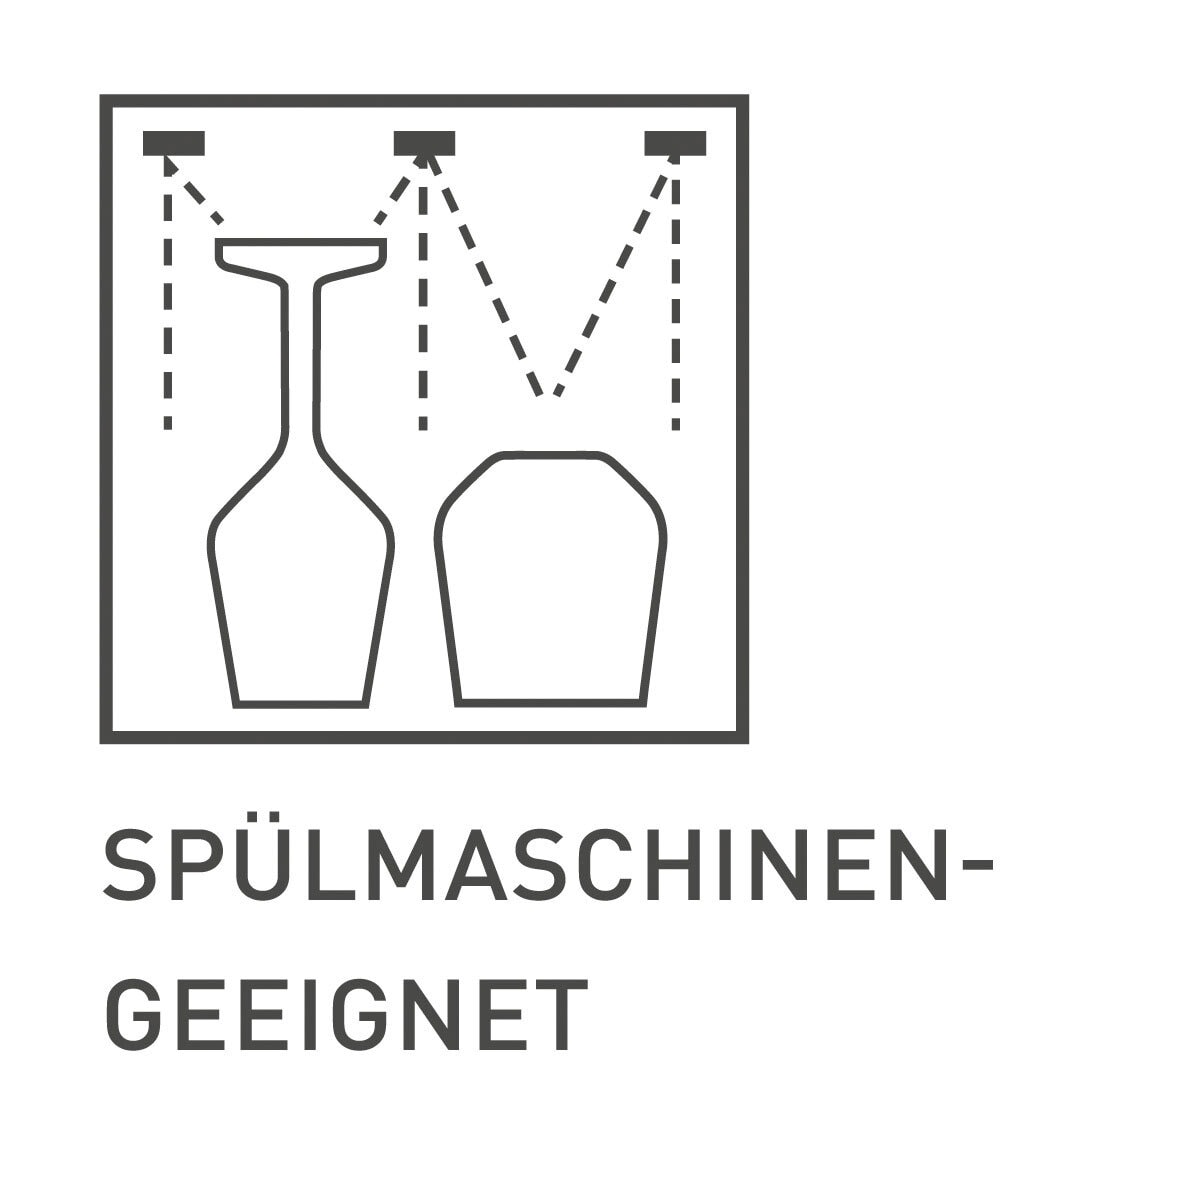 RITZENHOFF Wasser- und Rotweingläser-Set LICHTWEISS 12-teilig Kristallglas